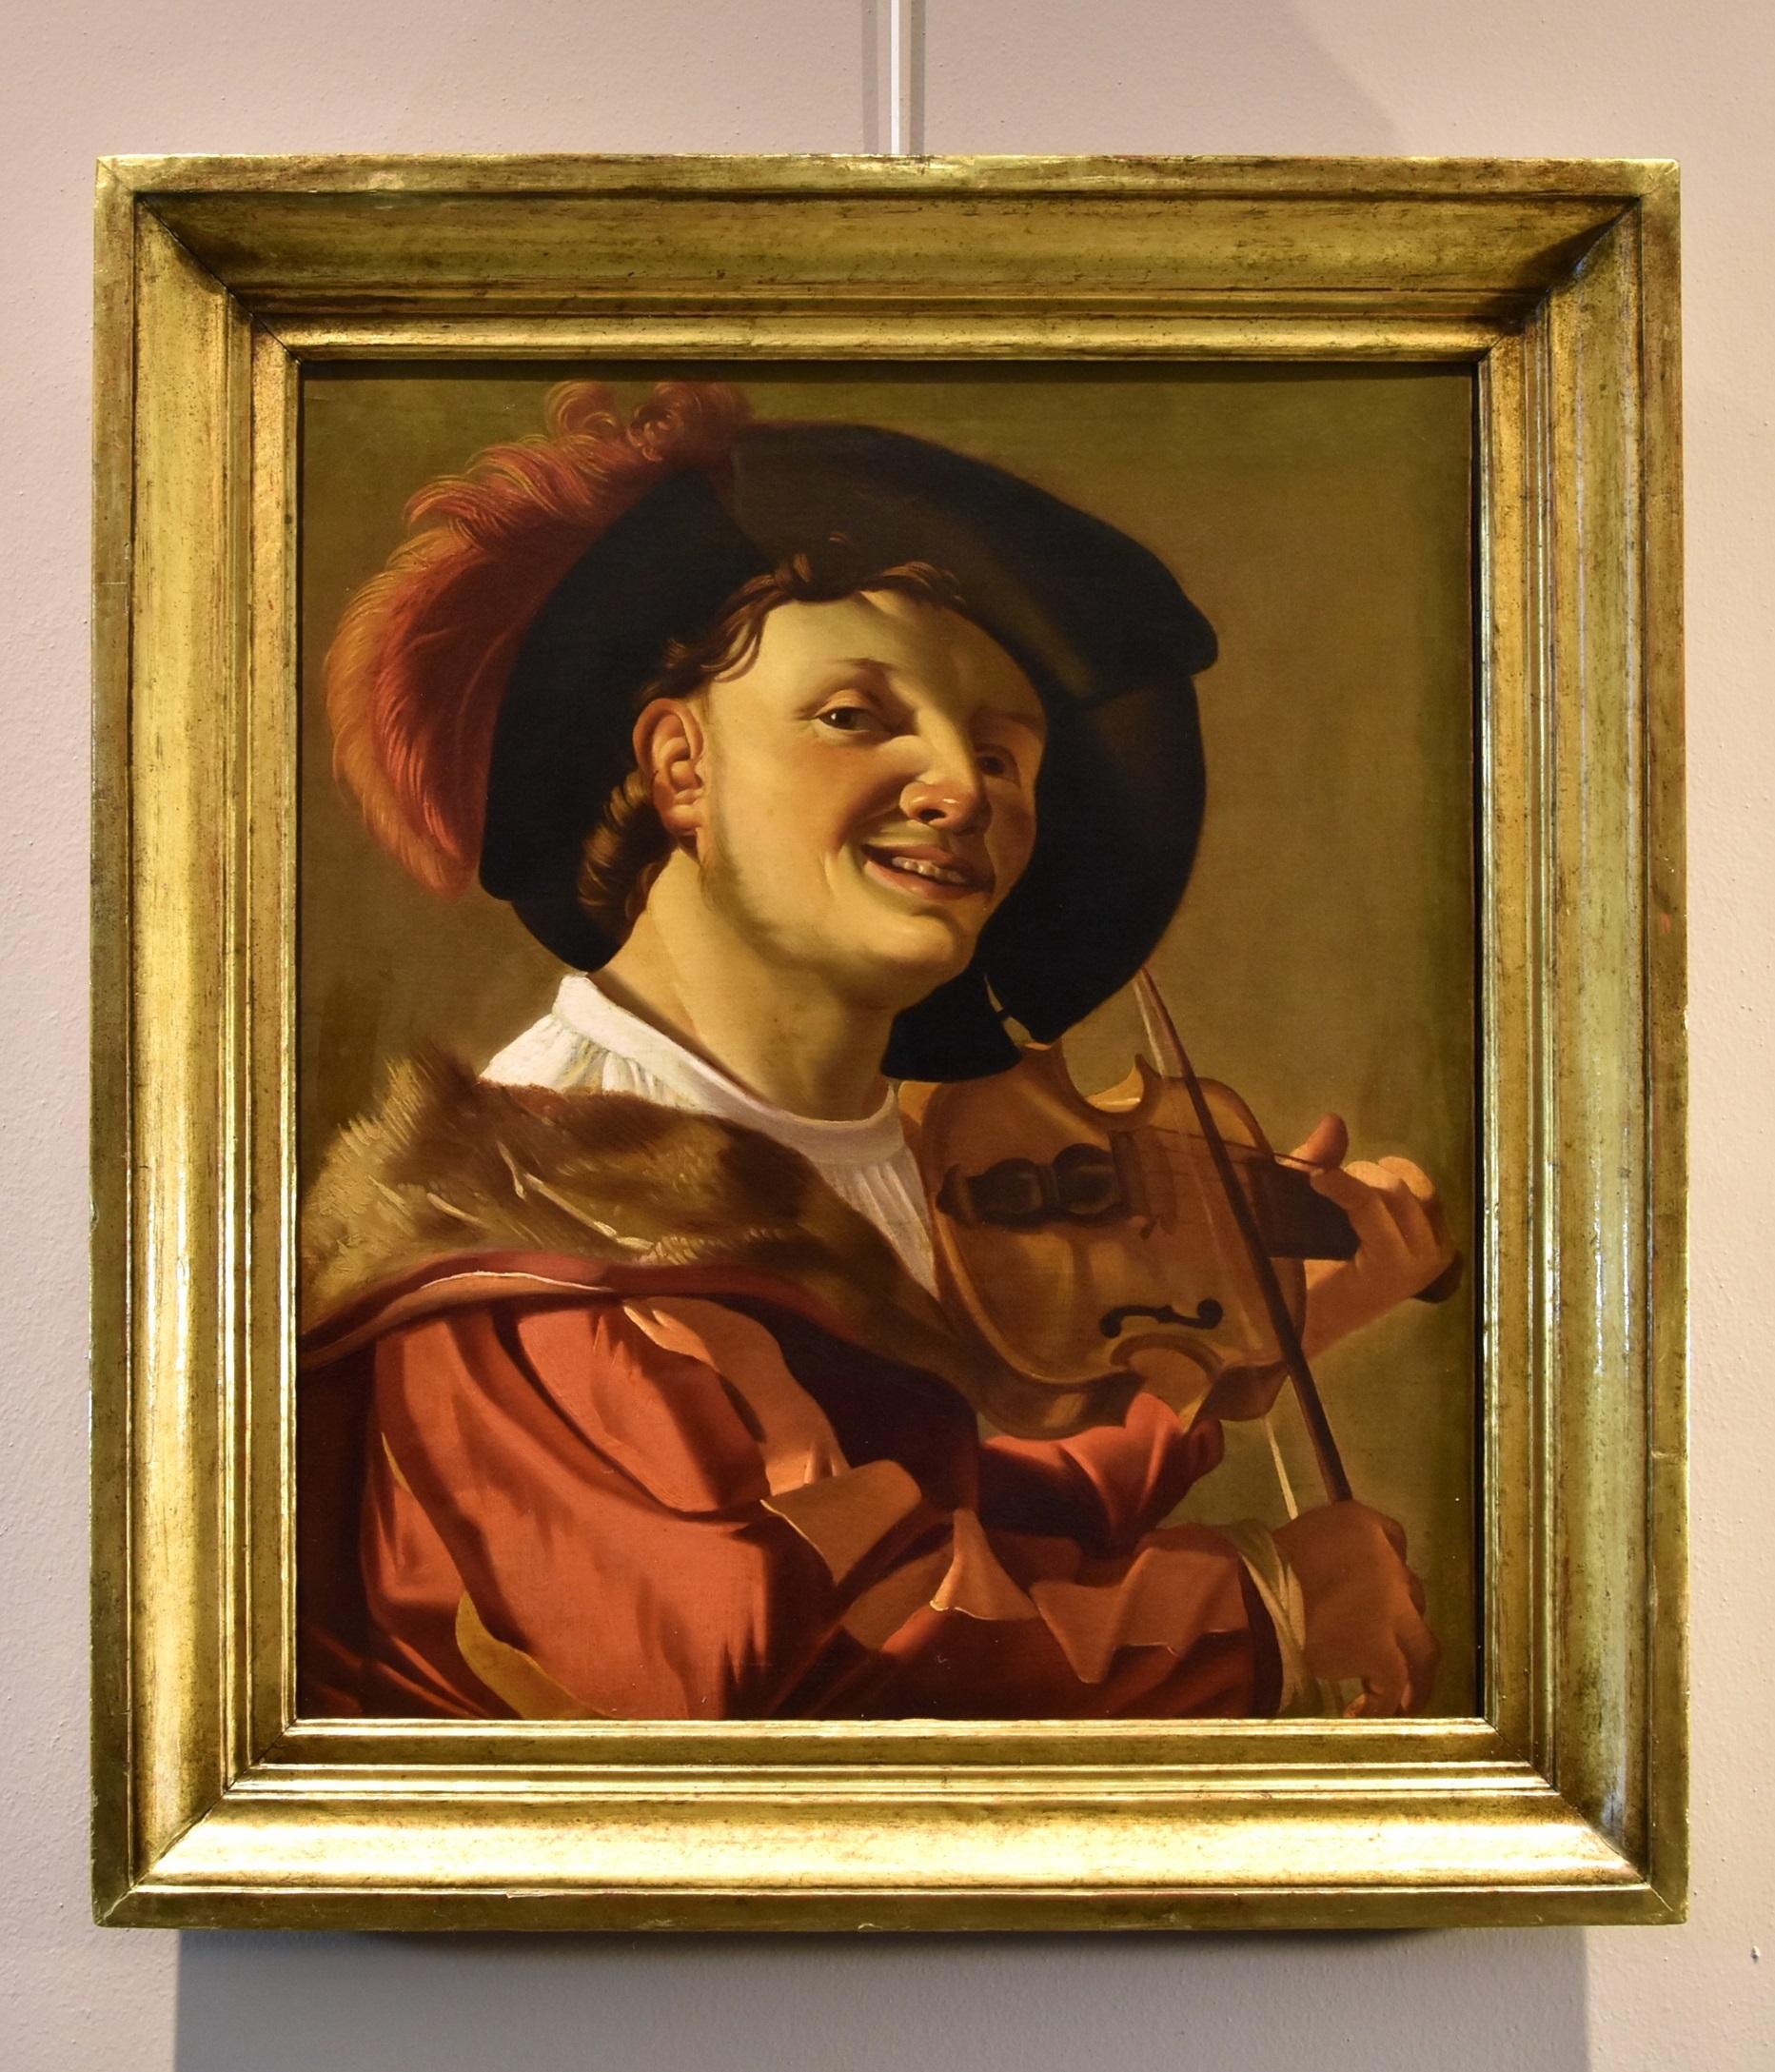 Geigenspieler Ter Brugghen Gemälde Öl auf Leinwand 17. Jahrhundert flämischer Altmeister (Alte Meister), Painting, von Hendrick Ter Brugghen (the Hague 1588-1629 Utrecht) 